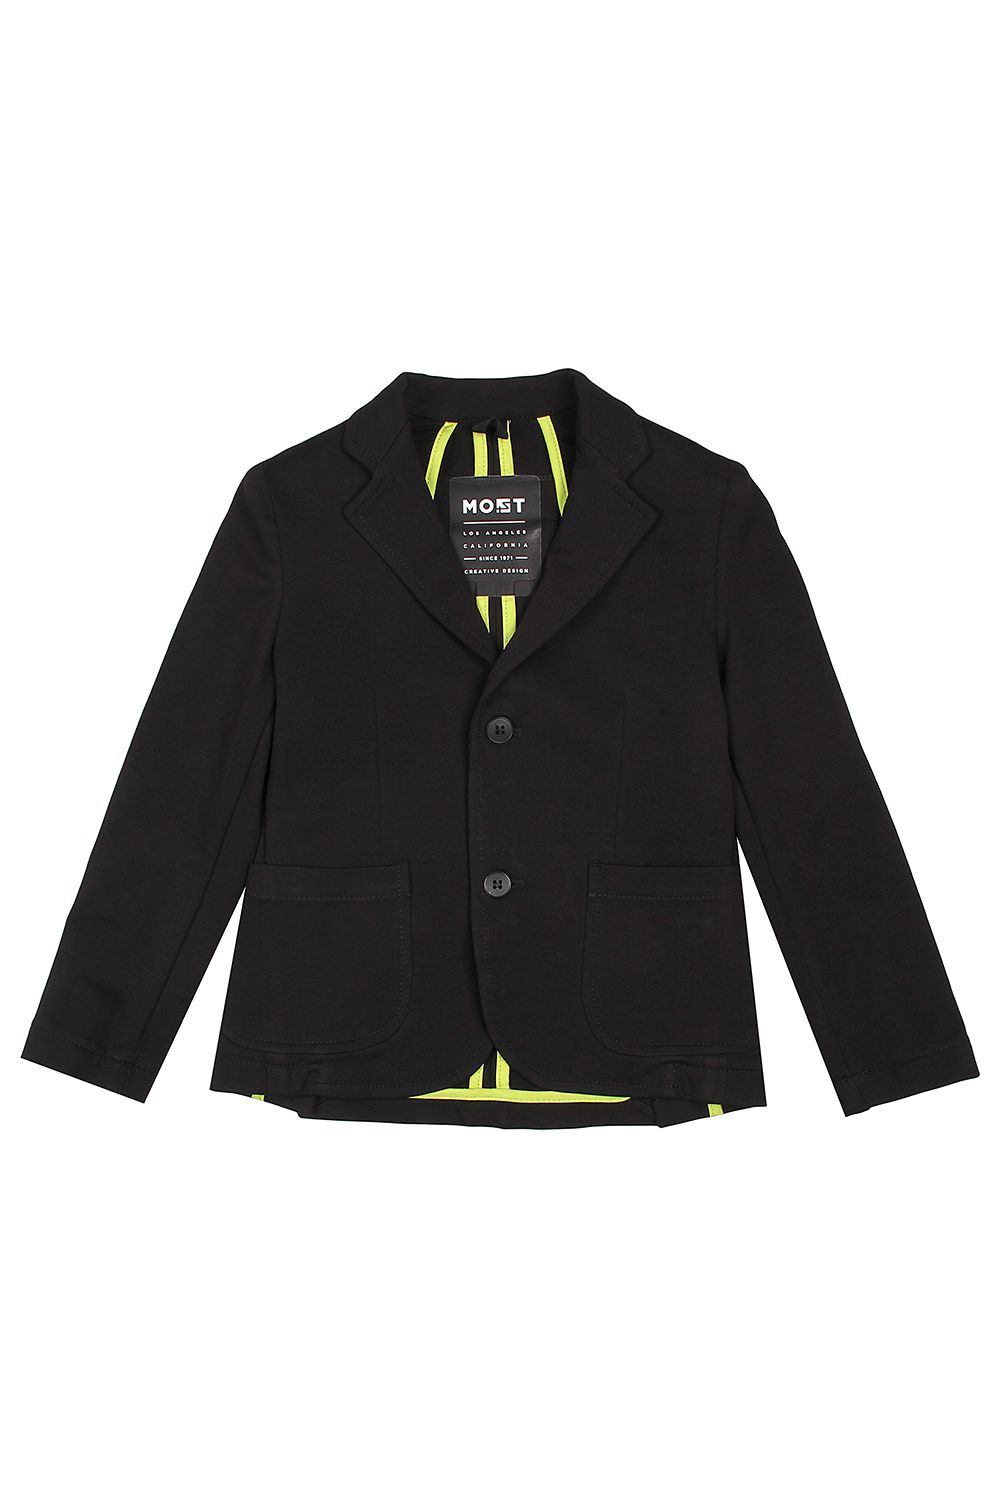 Пиджак Most Los Angeles, размер 116, цвет черный